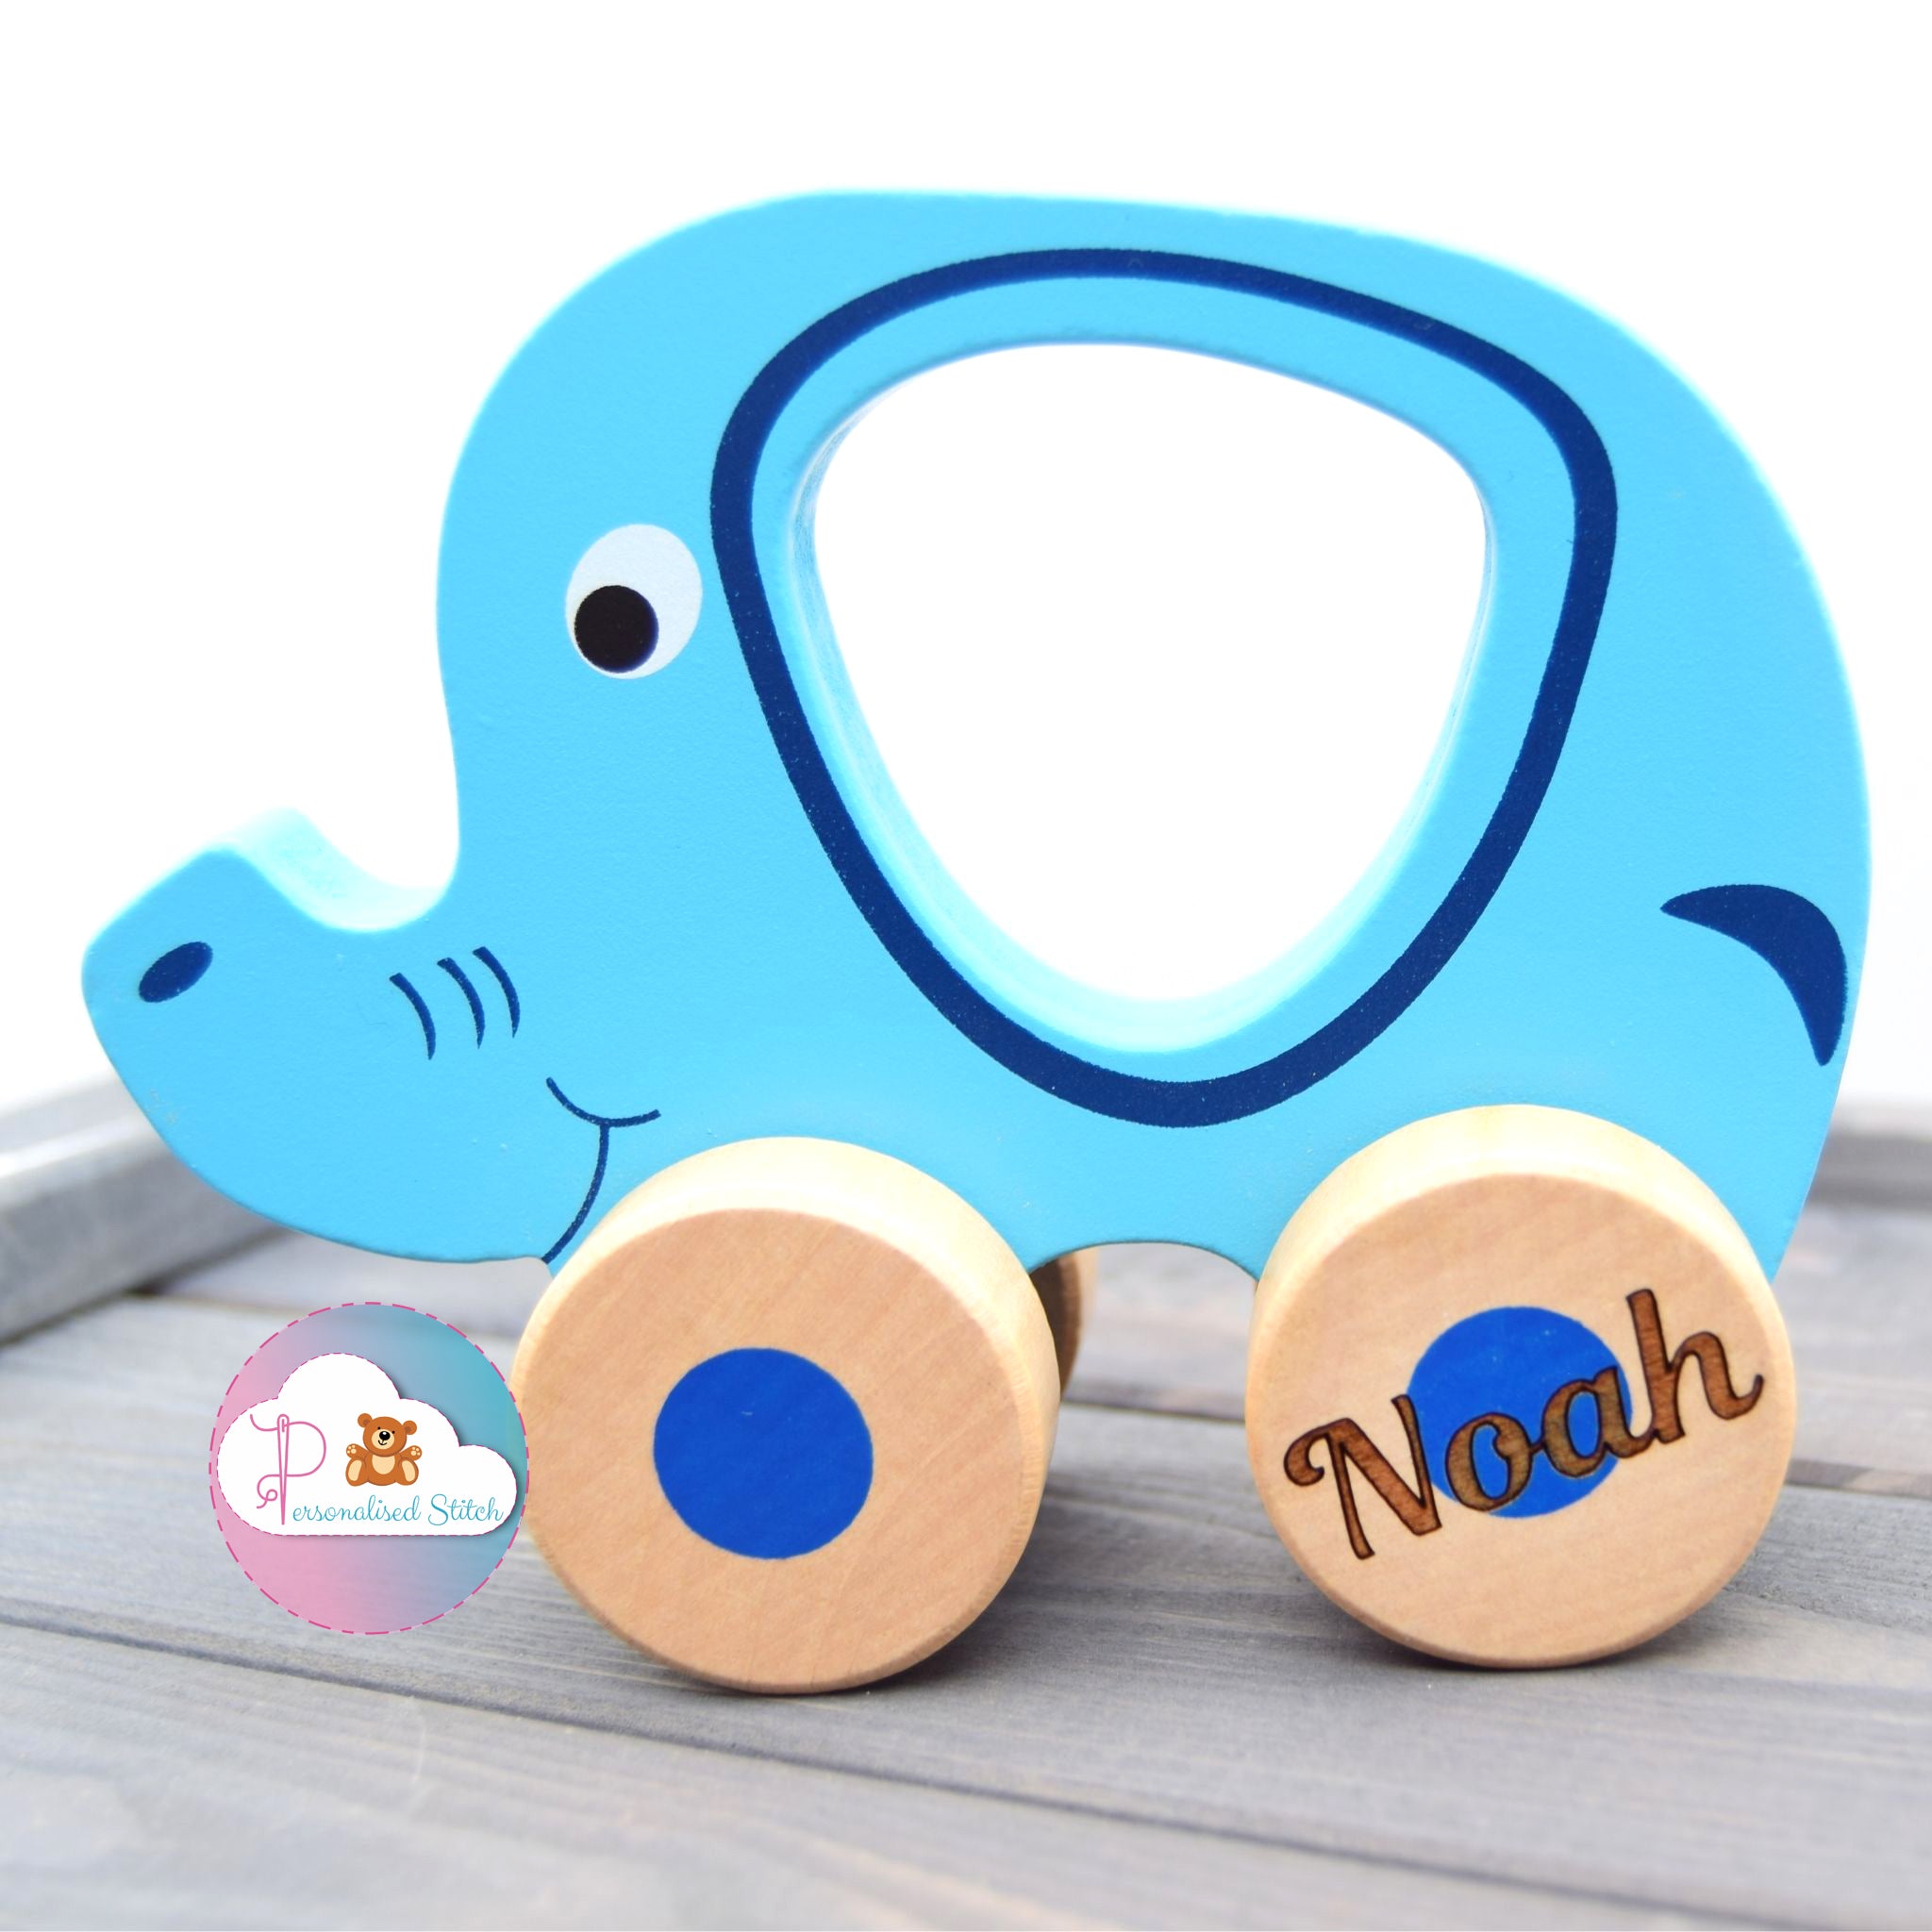 Personalised elephant wooden push along toy